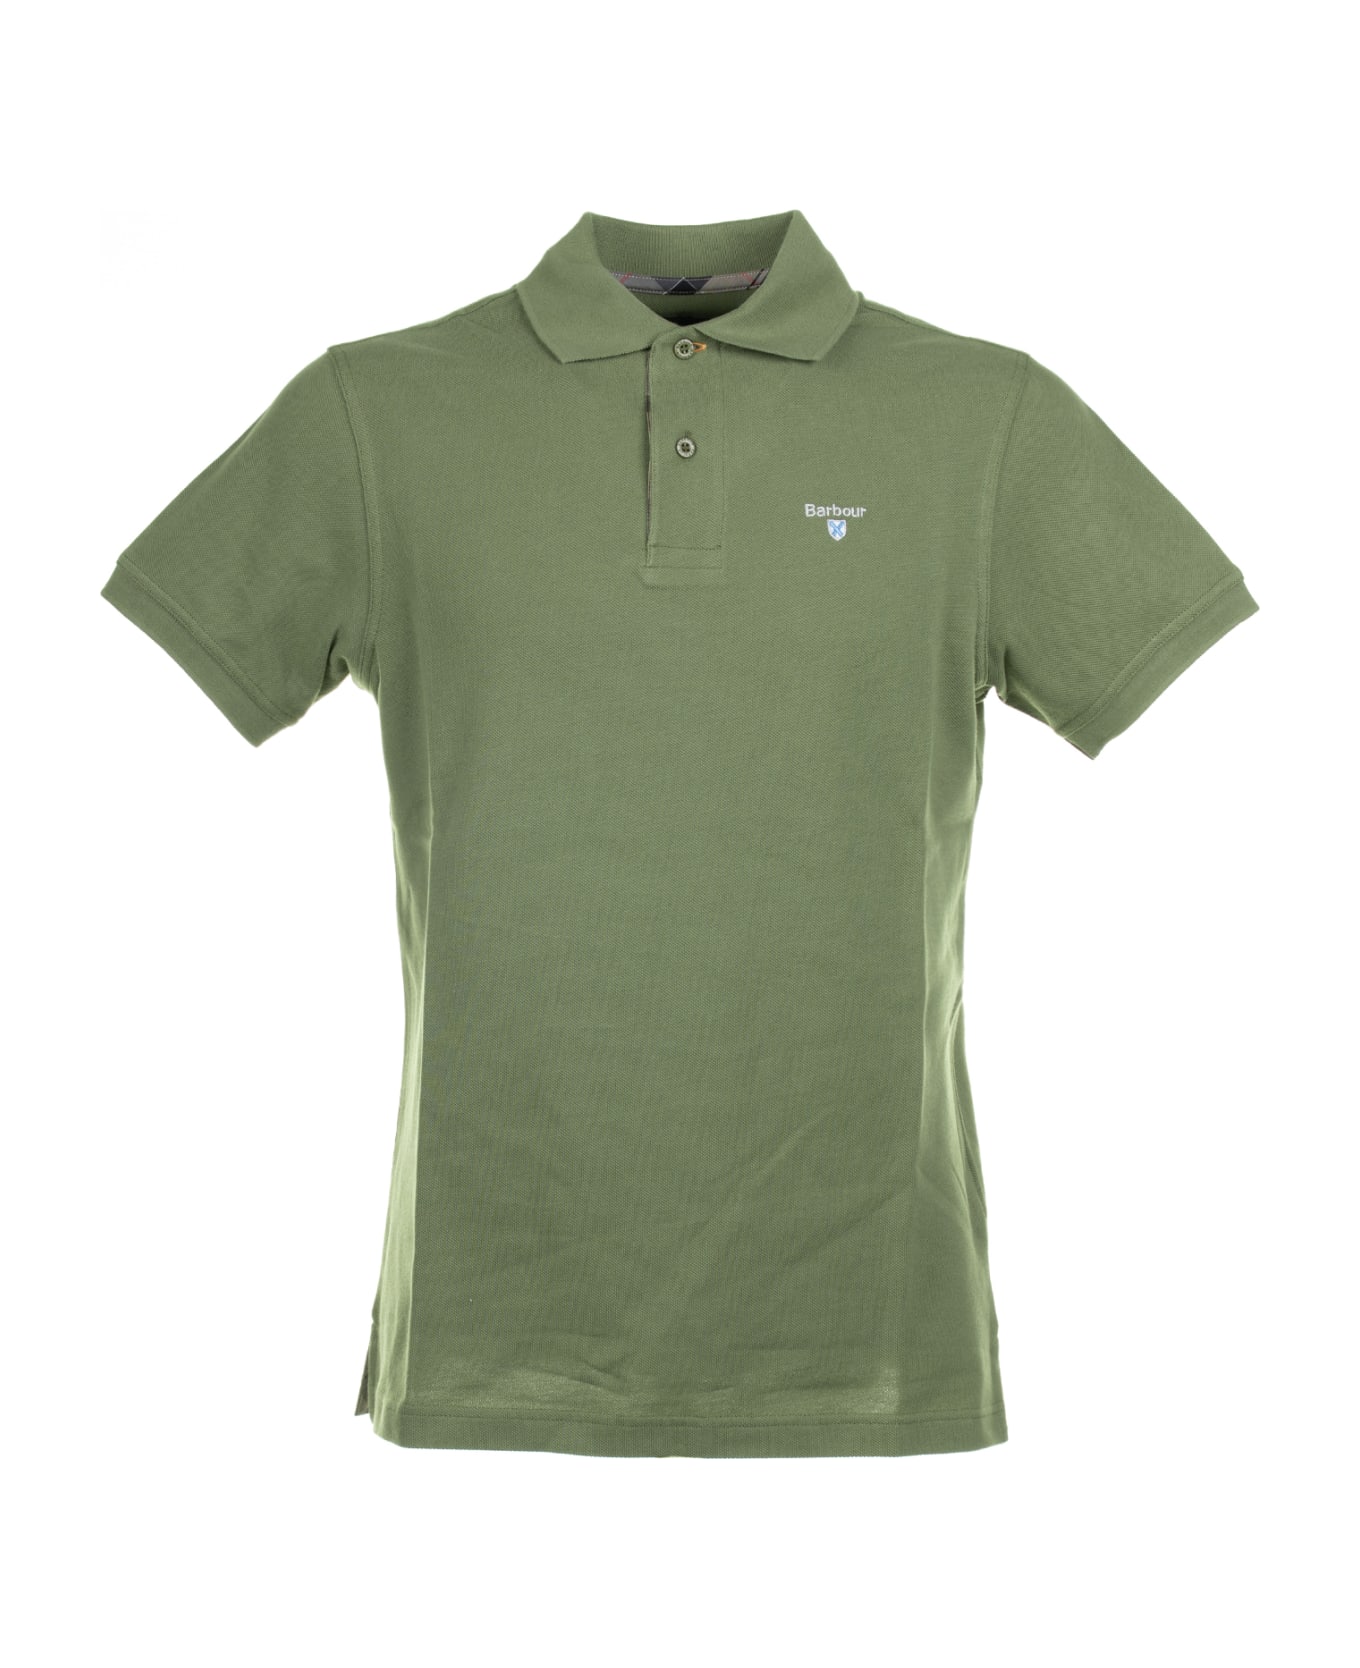 Barbour Short-sleeved Olive Piqué Polo Shirt - BURNT OLIVE ポロシャツ